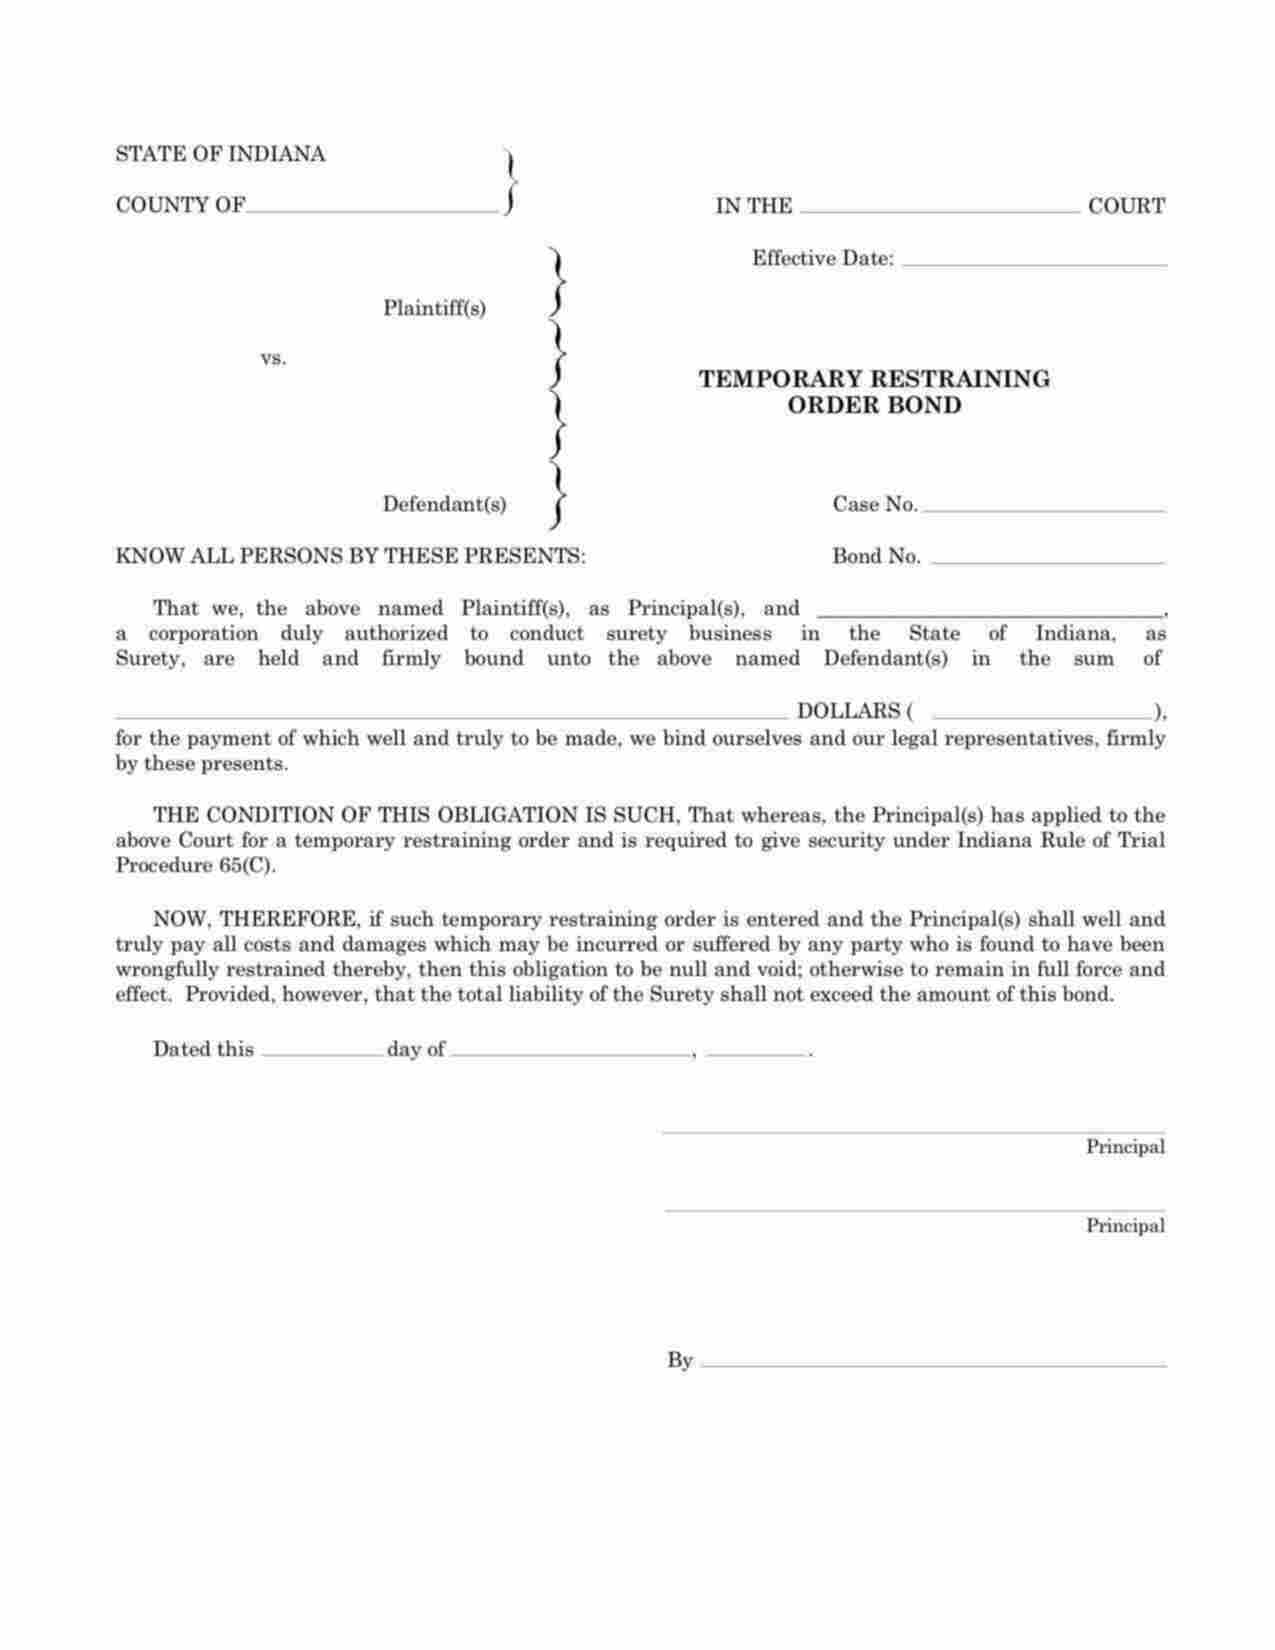 Indiana Temporary Restraining Order Bond Form